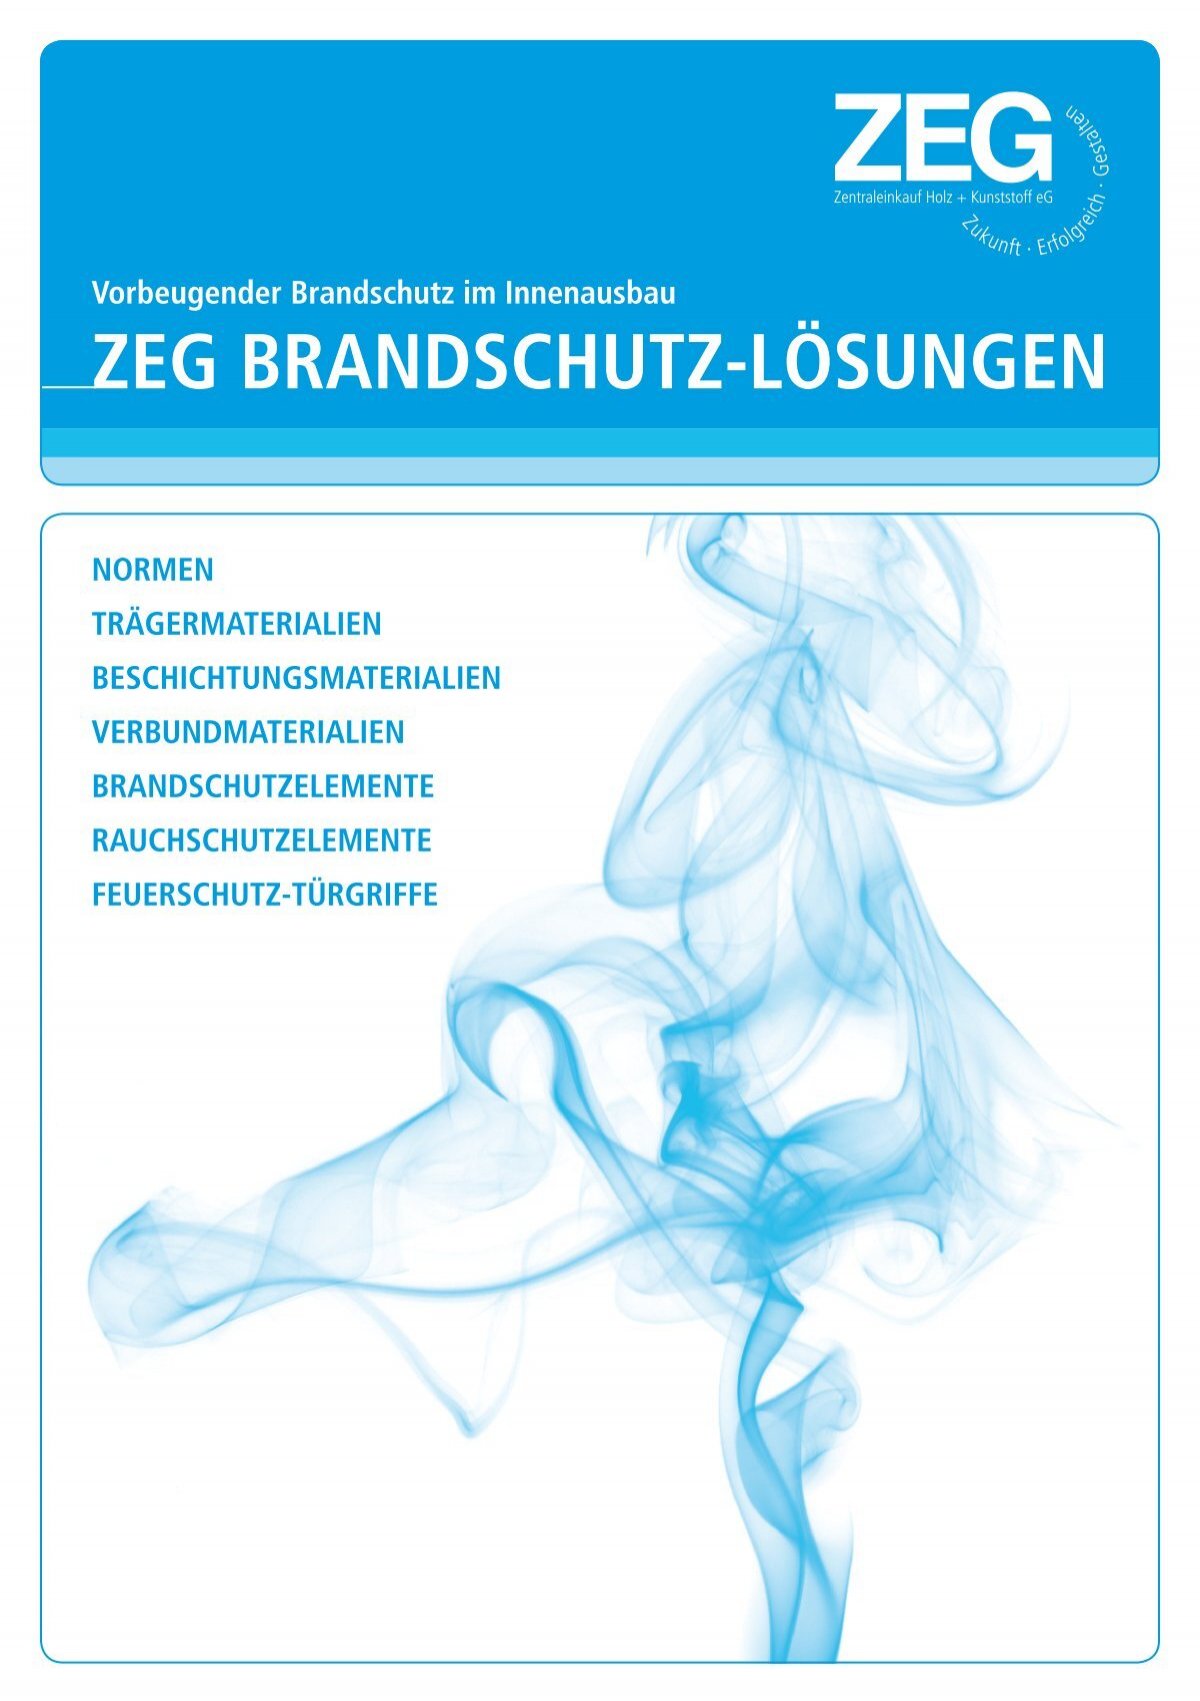 ZEG Brandschutzlösungen 2011 - ZEG Zentraleinkauf Holz und